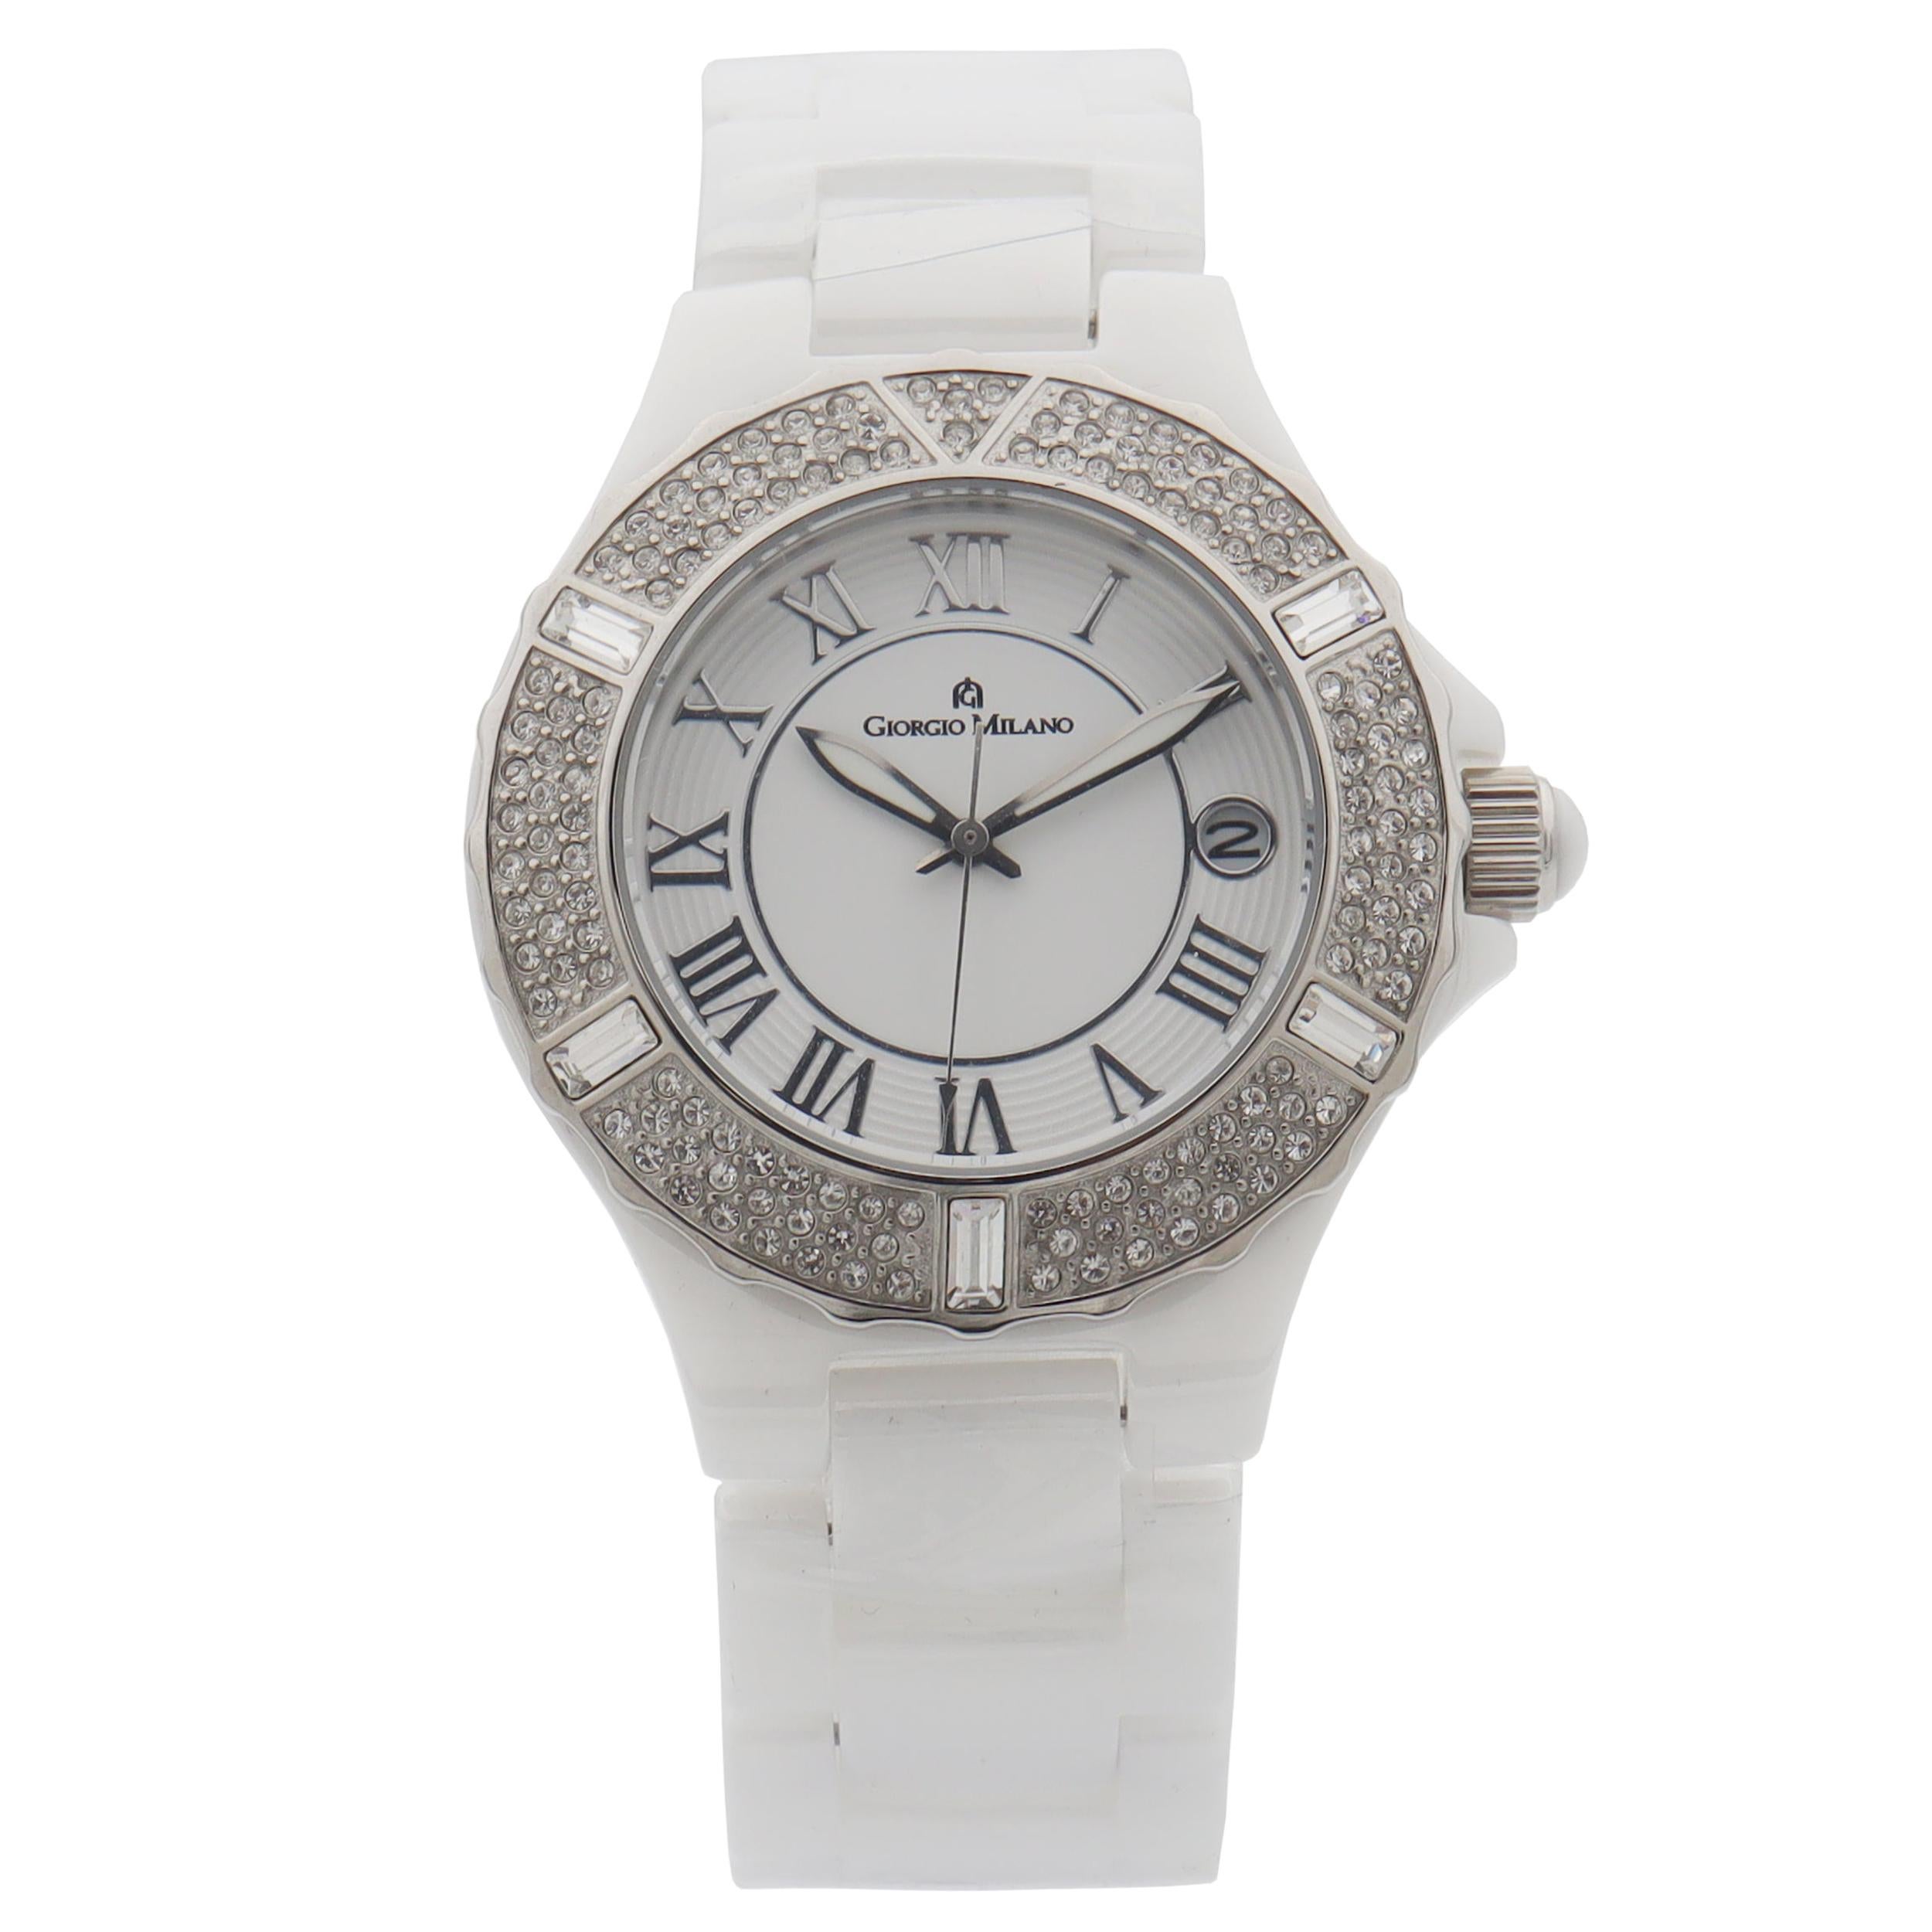 Giorgio Milano Ceramic Date White Dial Quartz Ladies Watch 863CWST01 For Sale